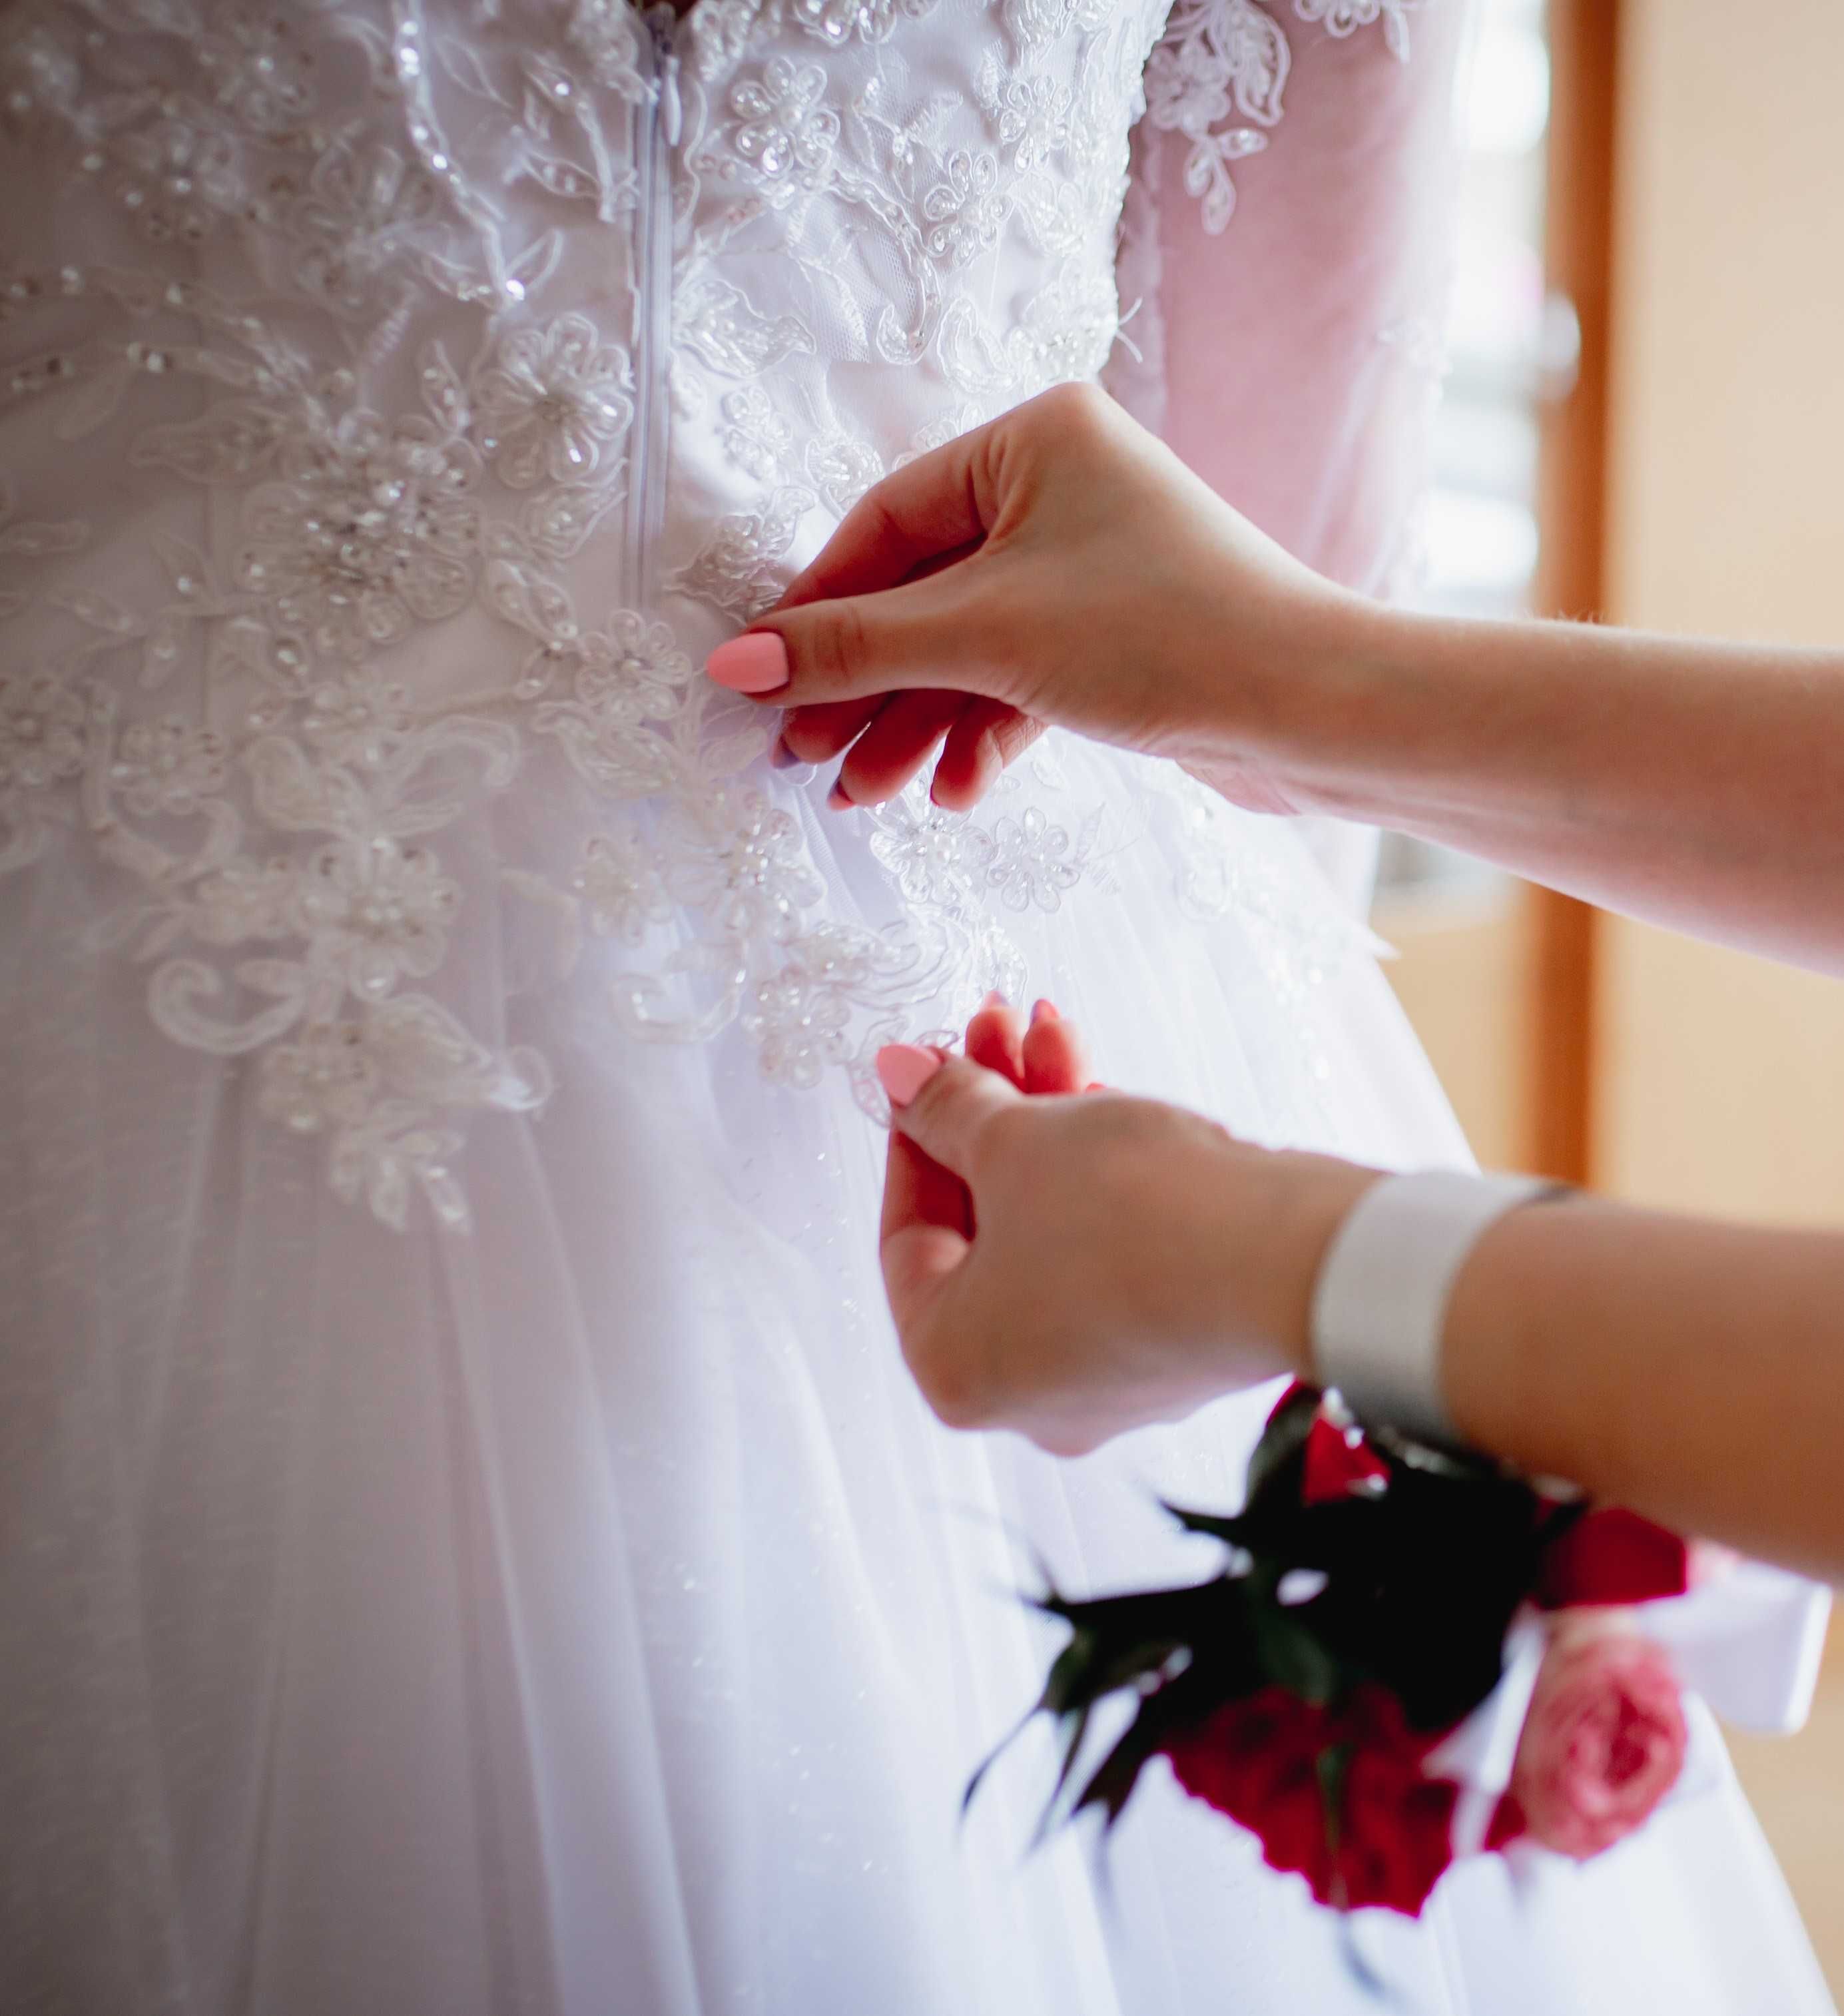 Piękna biała suknia ślubna z długim rękawem, na wysoką osobę